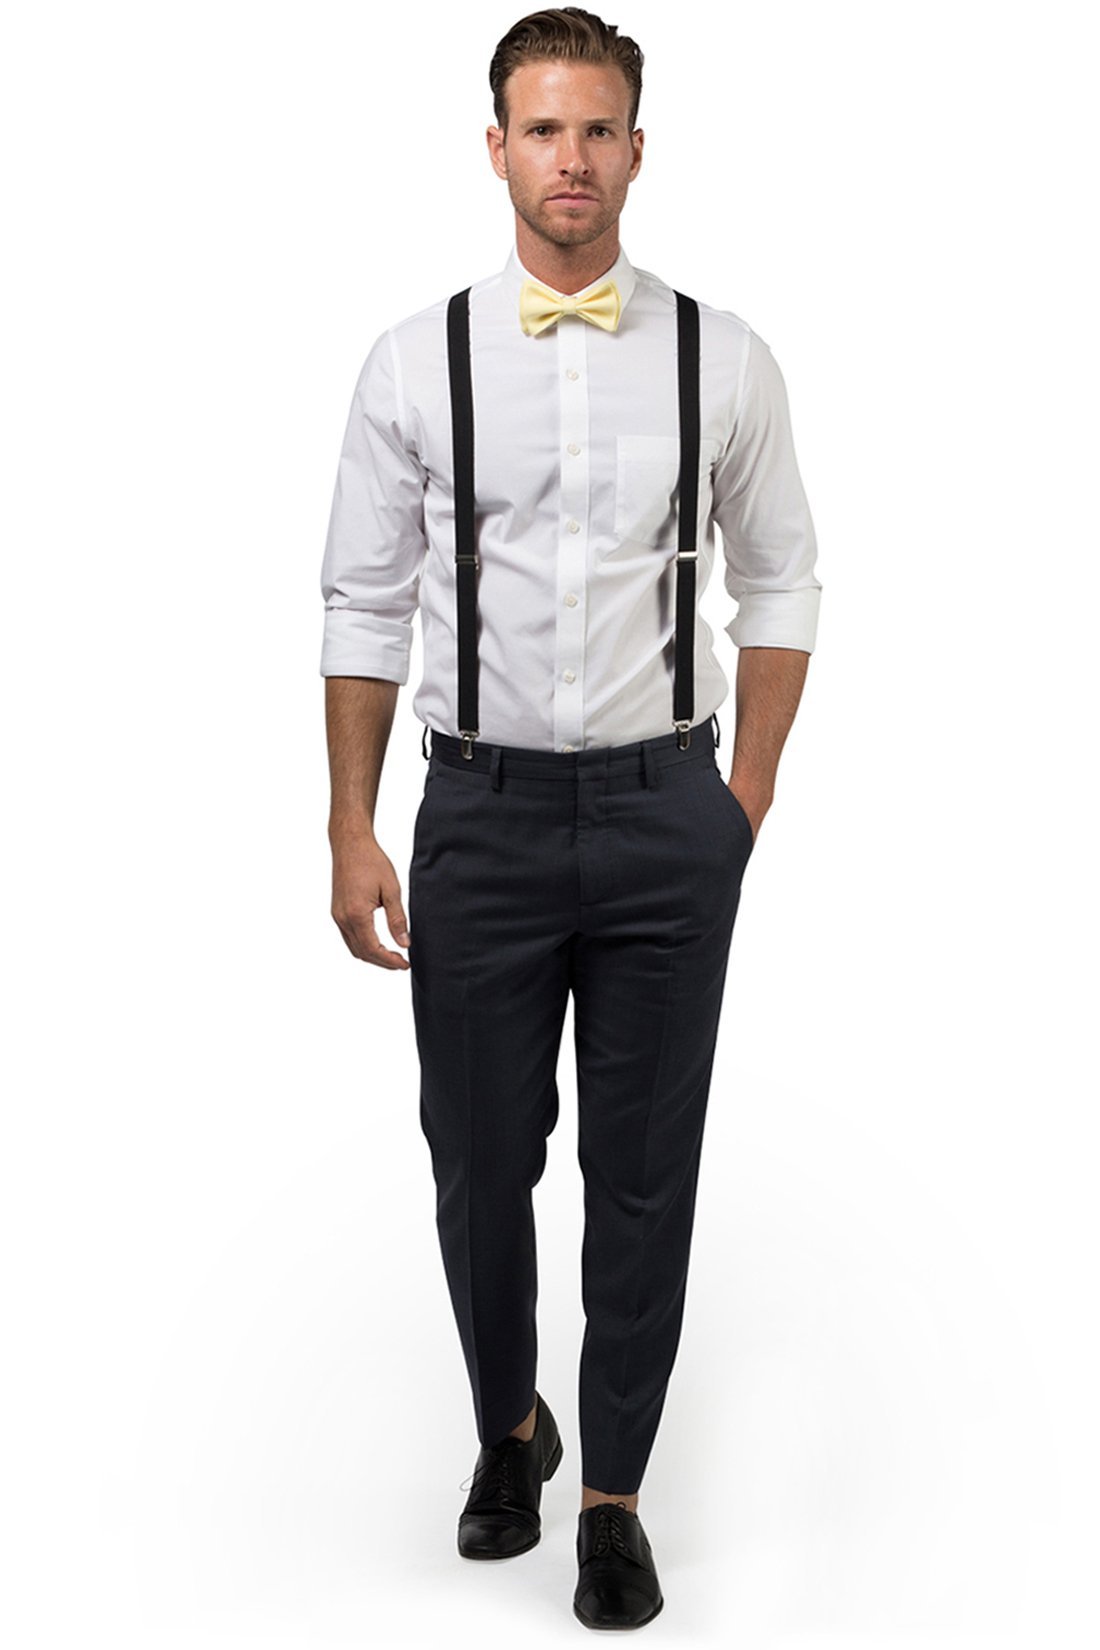 Black Suspenders & Yellow Bow Tie 